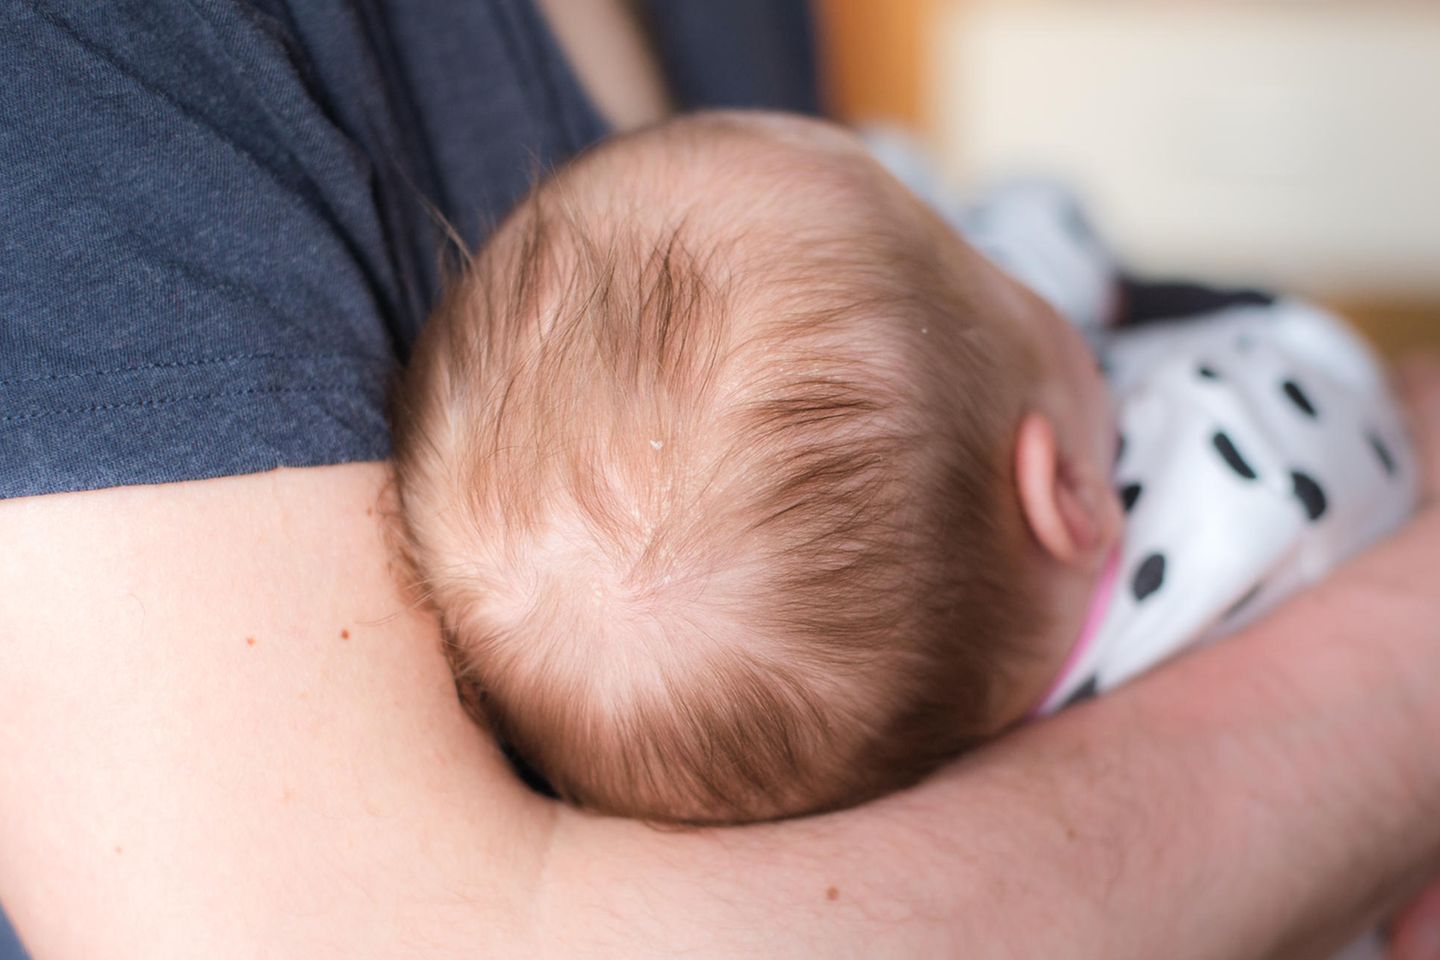 Kopfgneis: Baby mit Kopfgneis